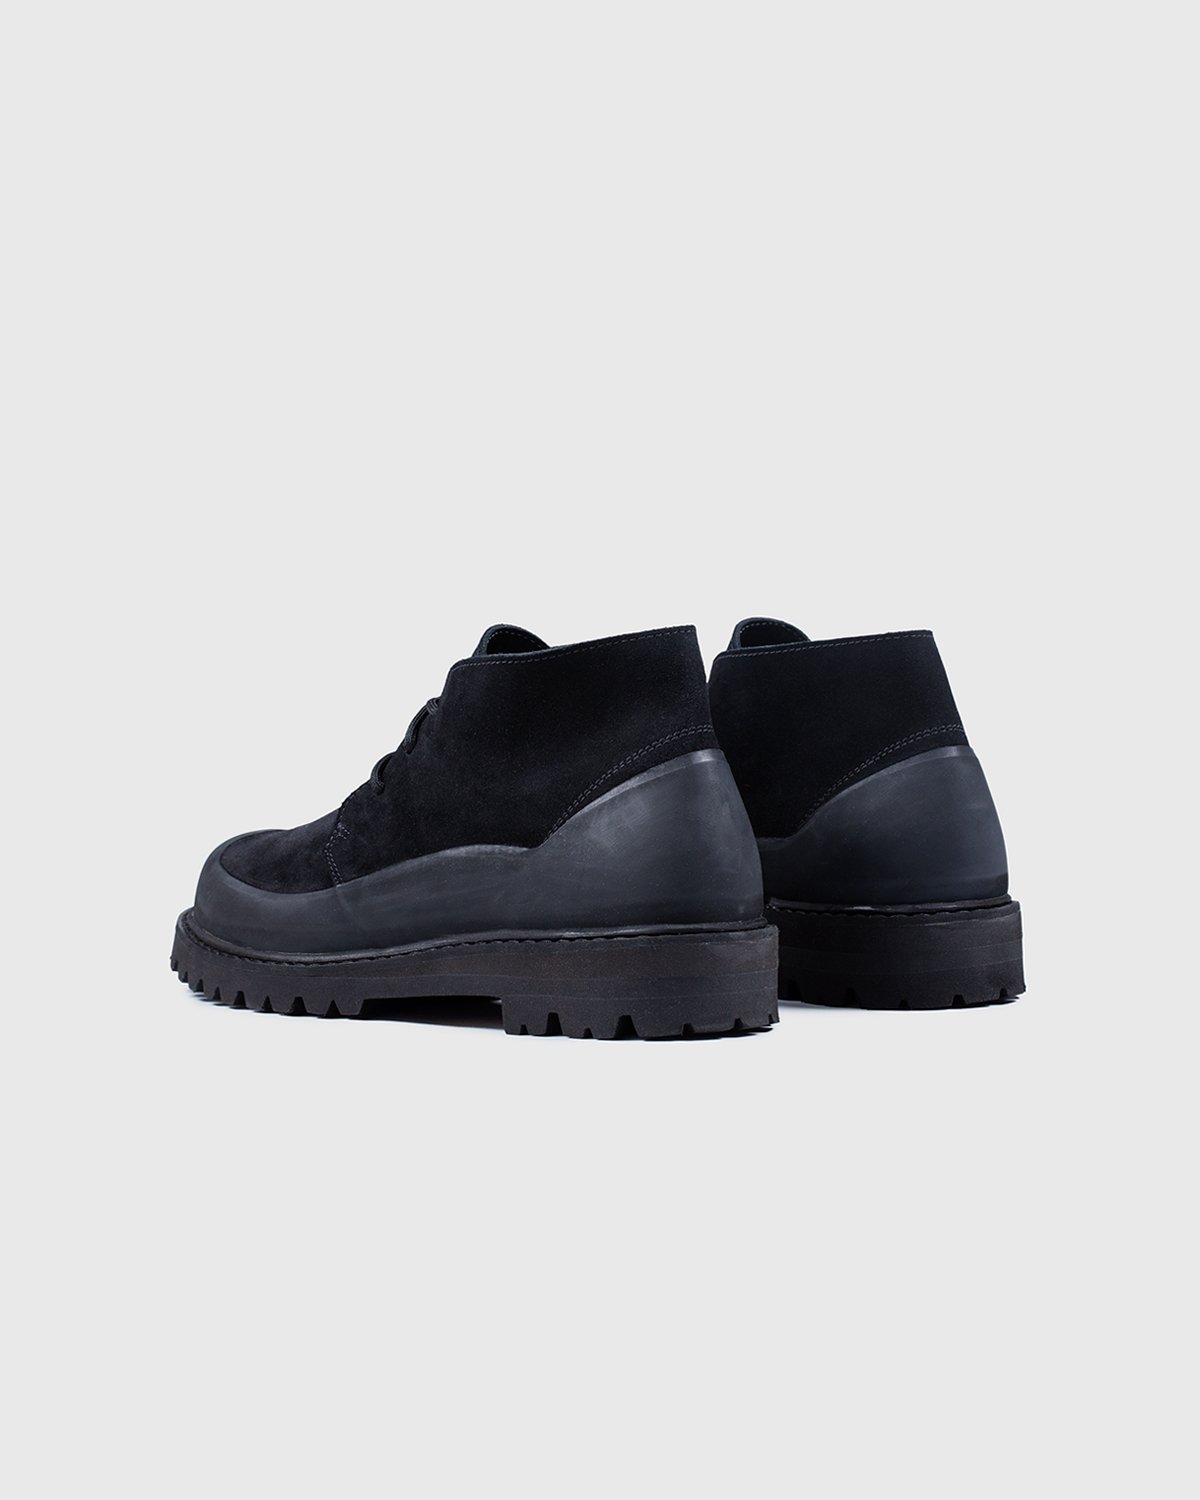 Diemme - Asiago Black Suede - Footwear - Black - Image 3